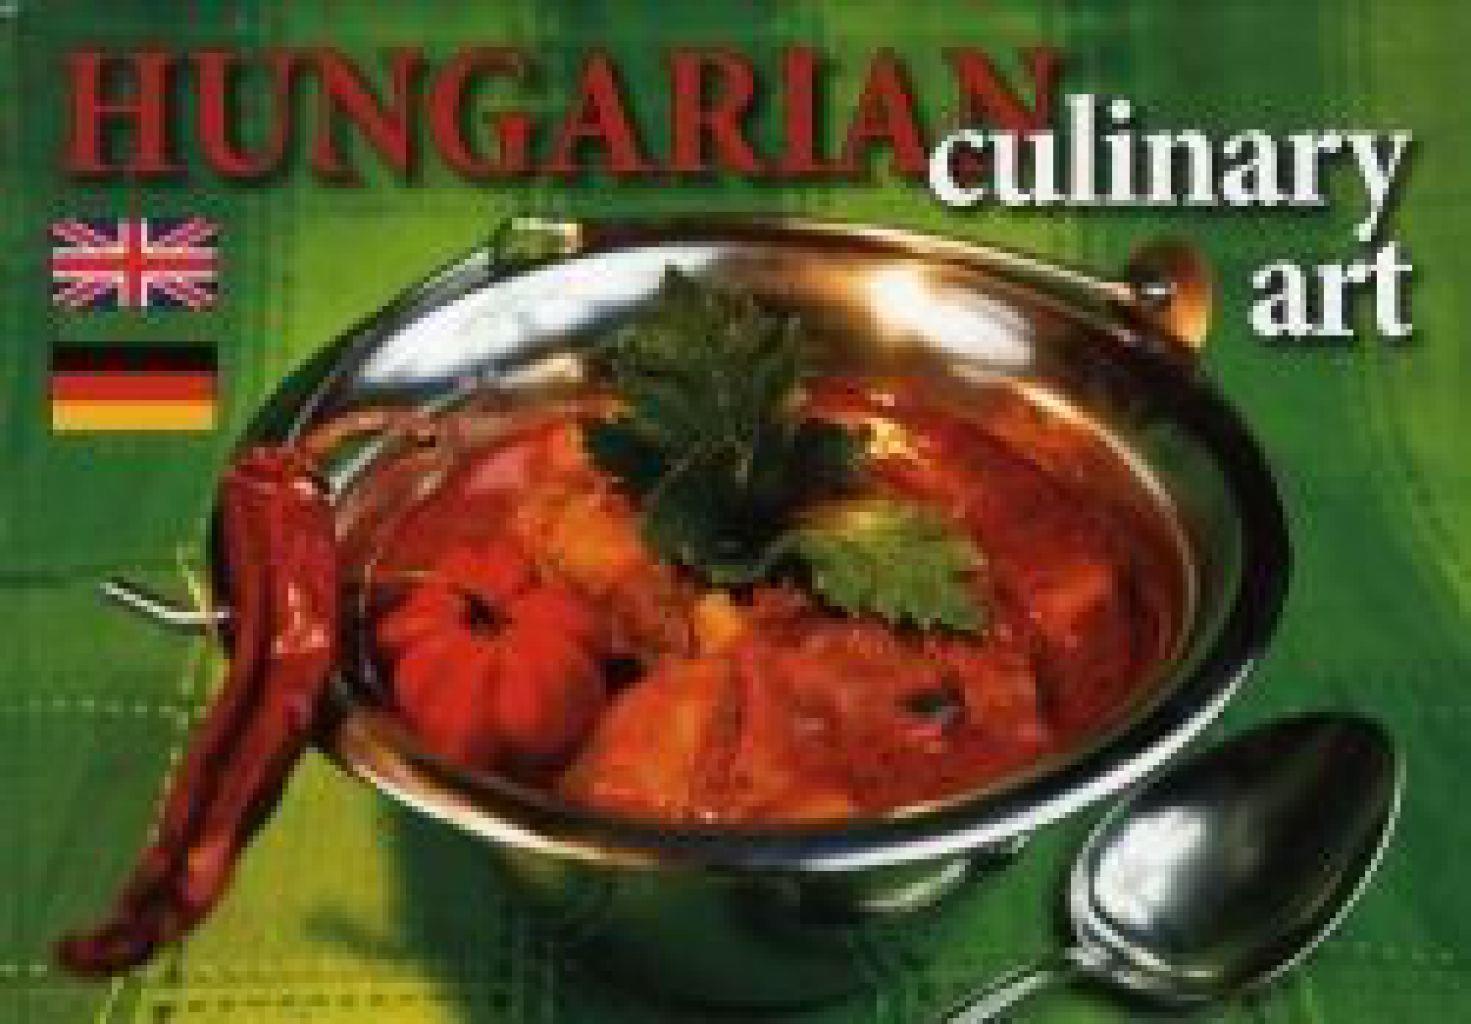 Hungarian culinary art